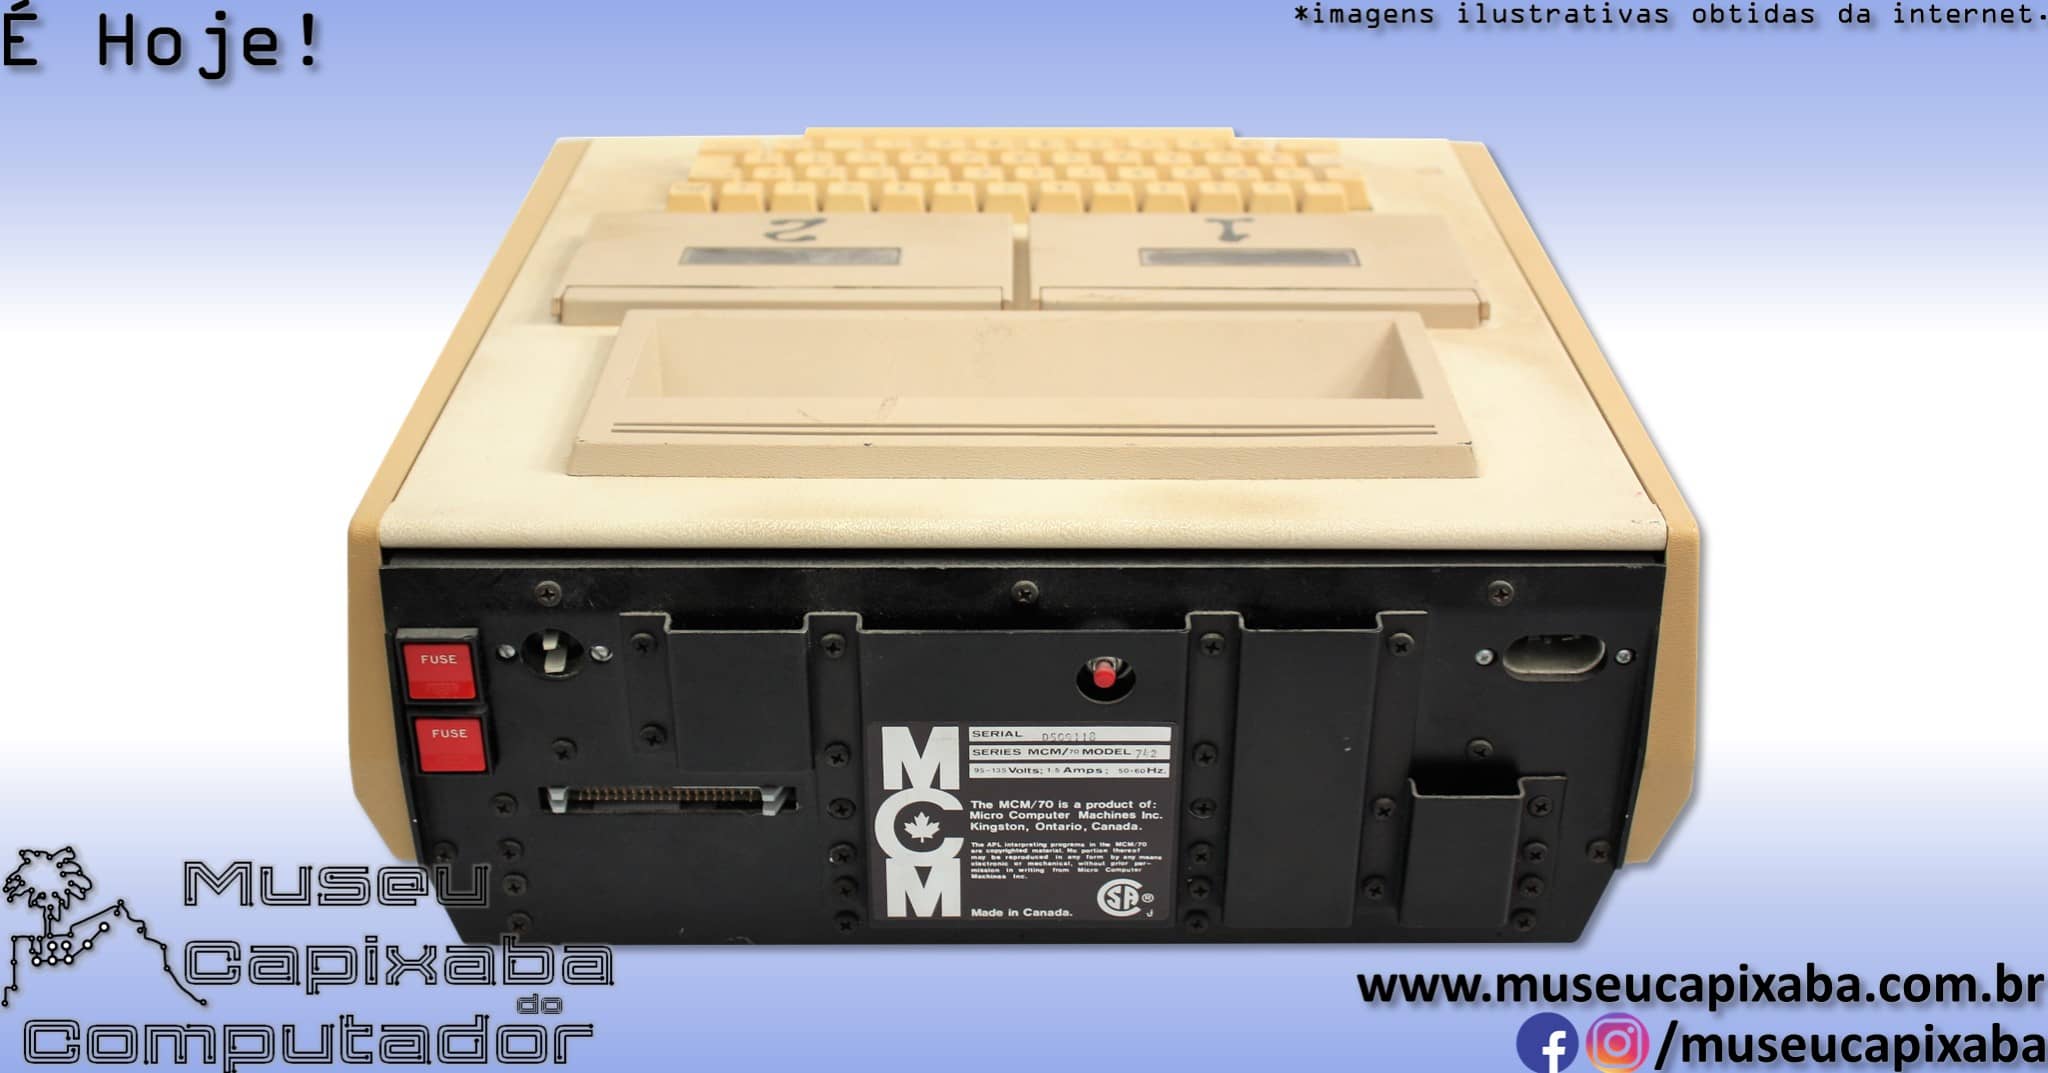 microcomputador MCM 70 3